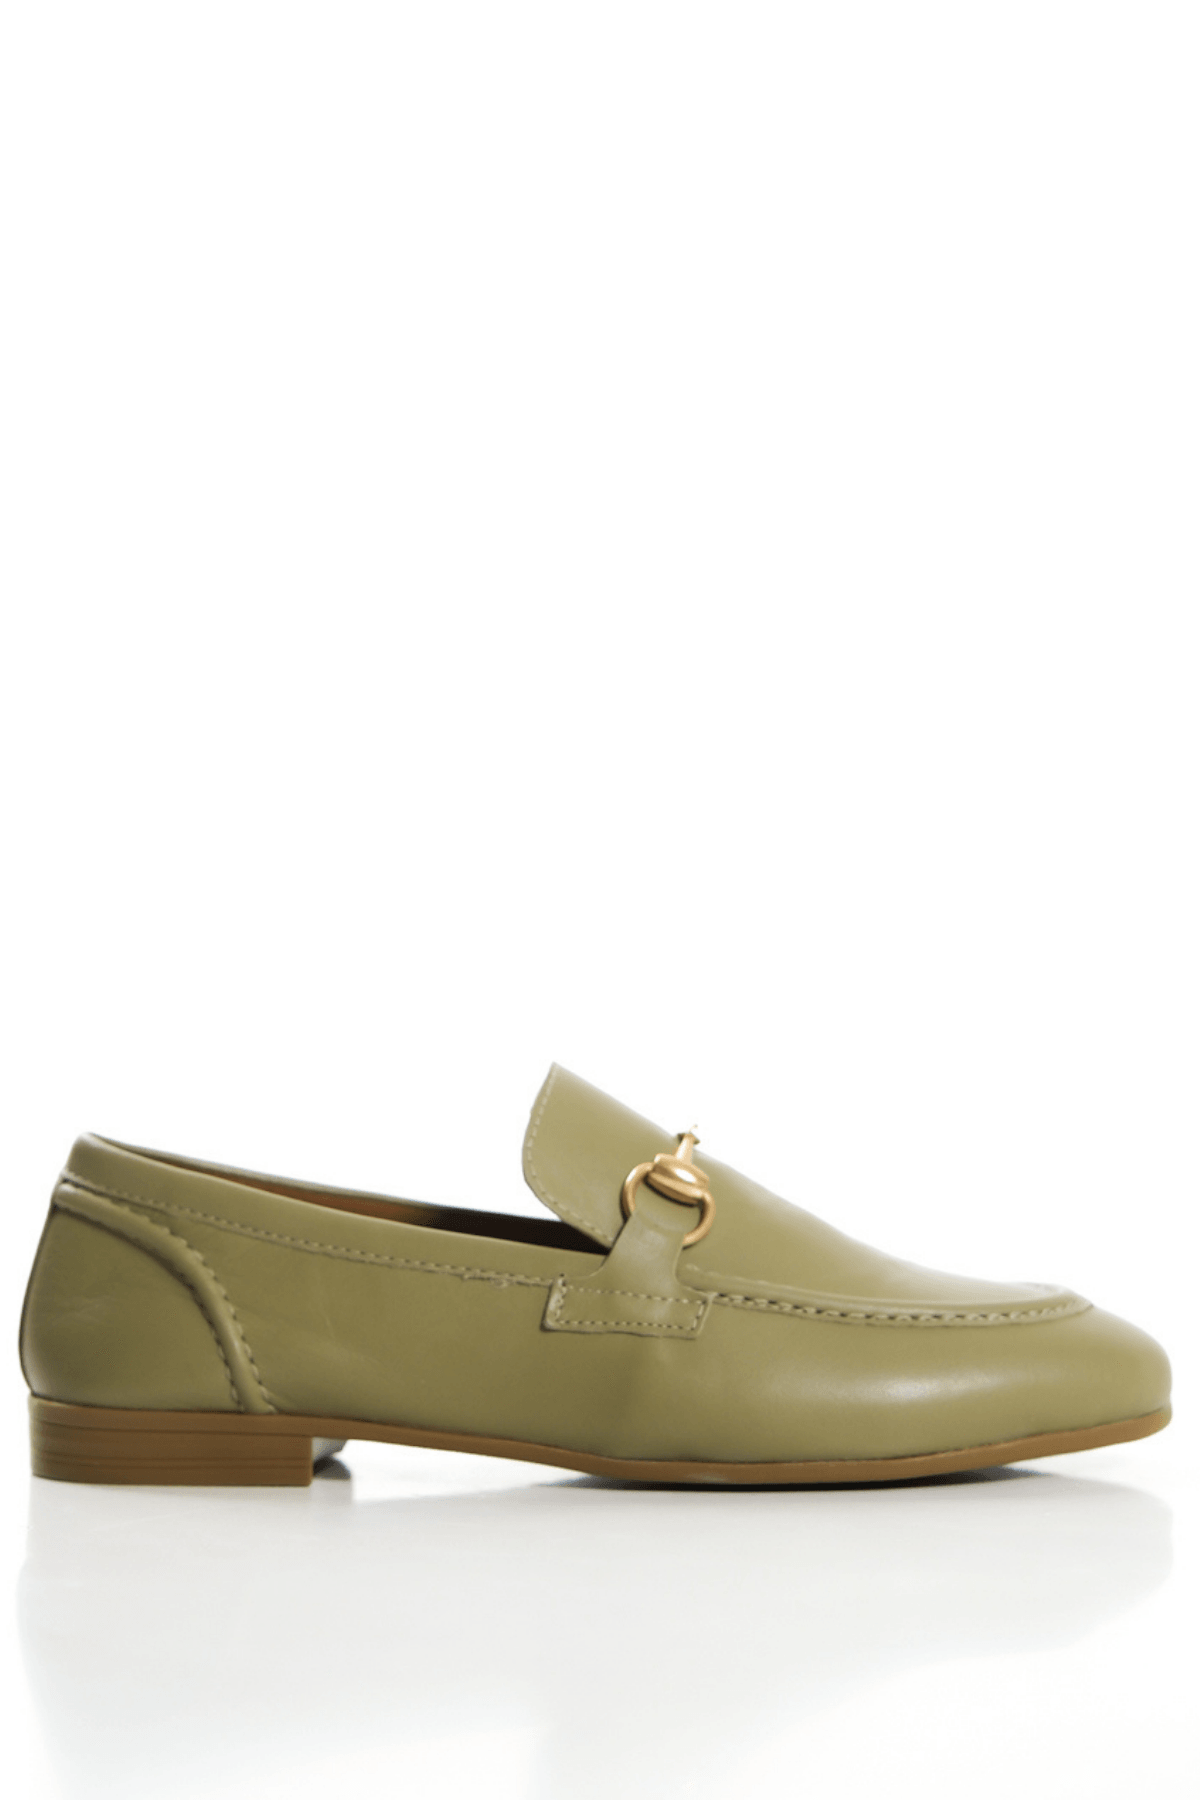 Yeşil Hakiki Deri Kadın Loafer Gold Tokalı Babet Makosen Ayakkabı